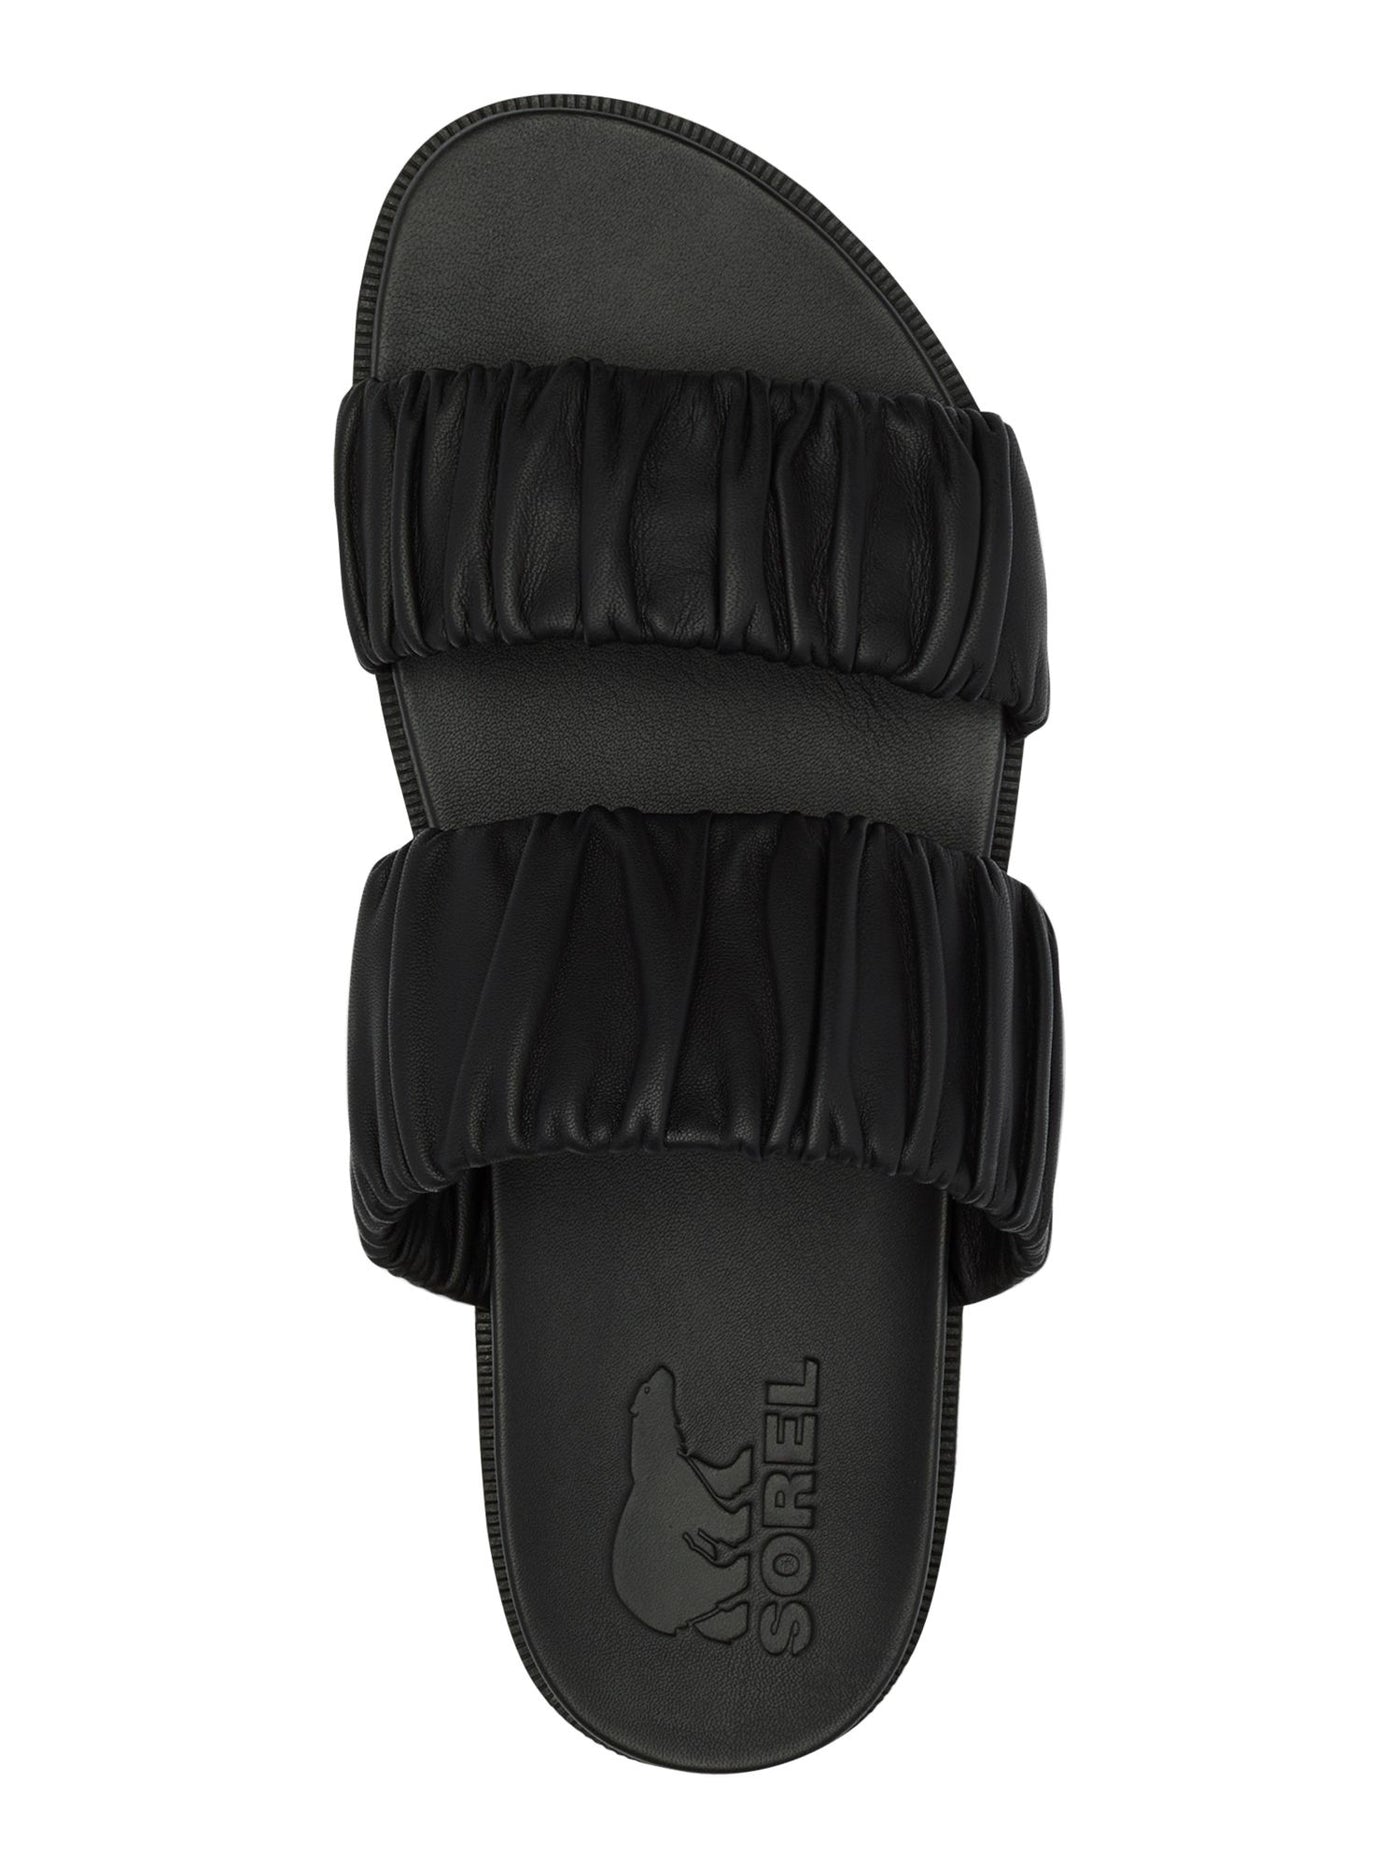 SOREL Mens Black 1" Sawtooth Platform Ruched Roaming Round Toe Wedge Slip On Leather Slide Sandals Shoes 6